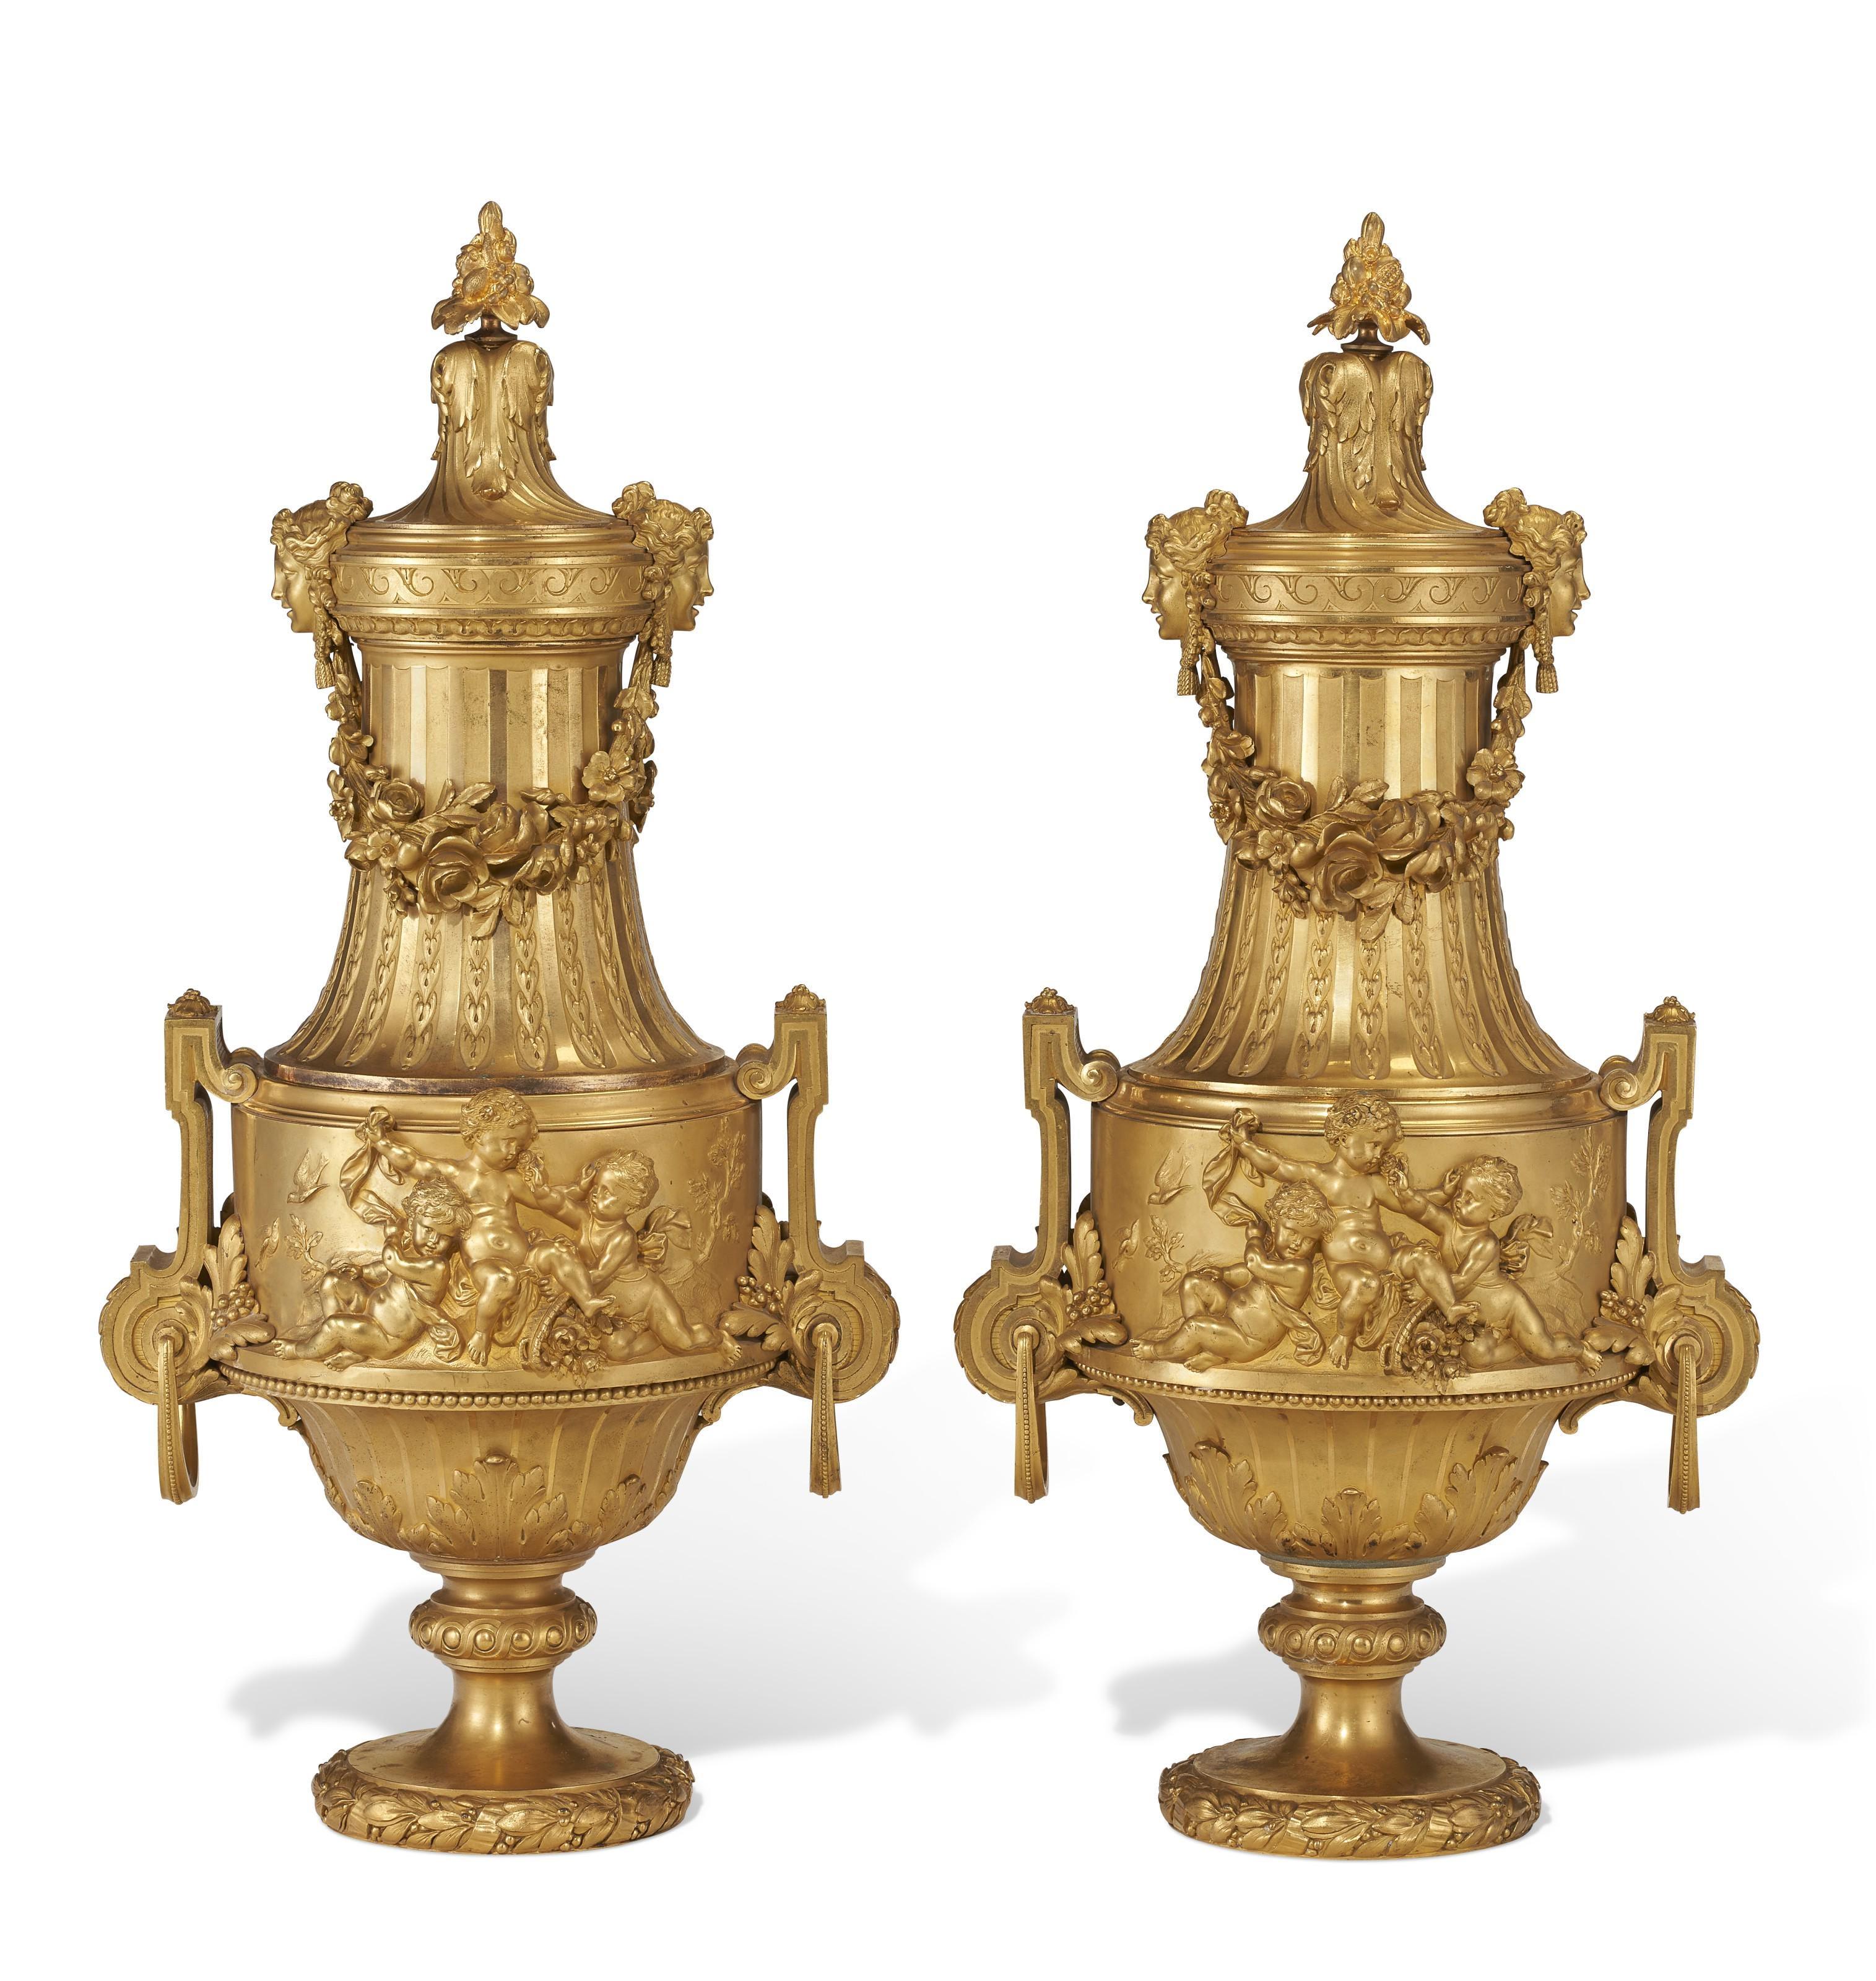 Notre paire d'urnes exceptionnelles en bronze doré est attribuée au designer français Maxime Secretant, vers les années 1890.  Ils présentent des cols à godrons en spirale flanqués de masques féminins reliés par des guirlandes florales suspendues et